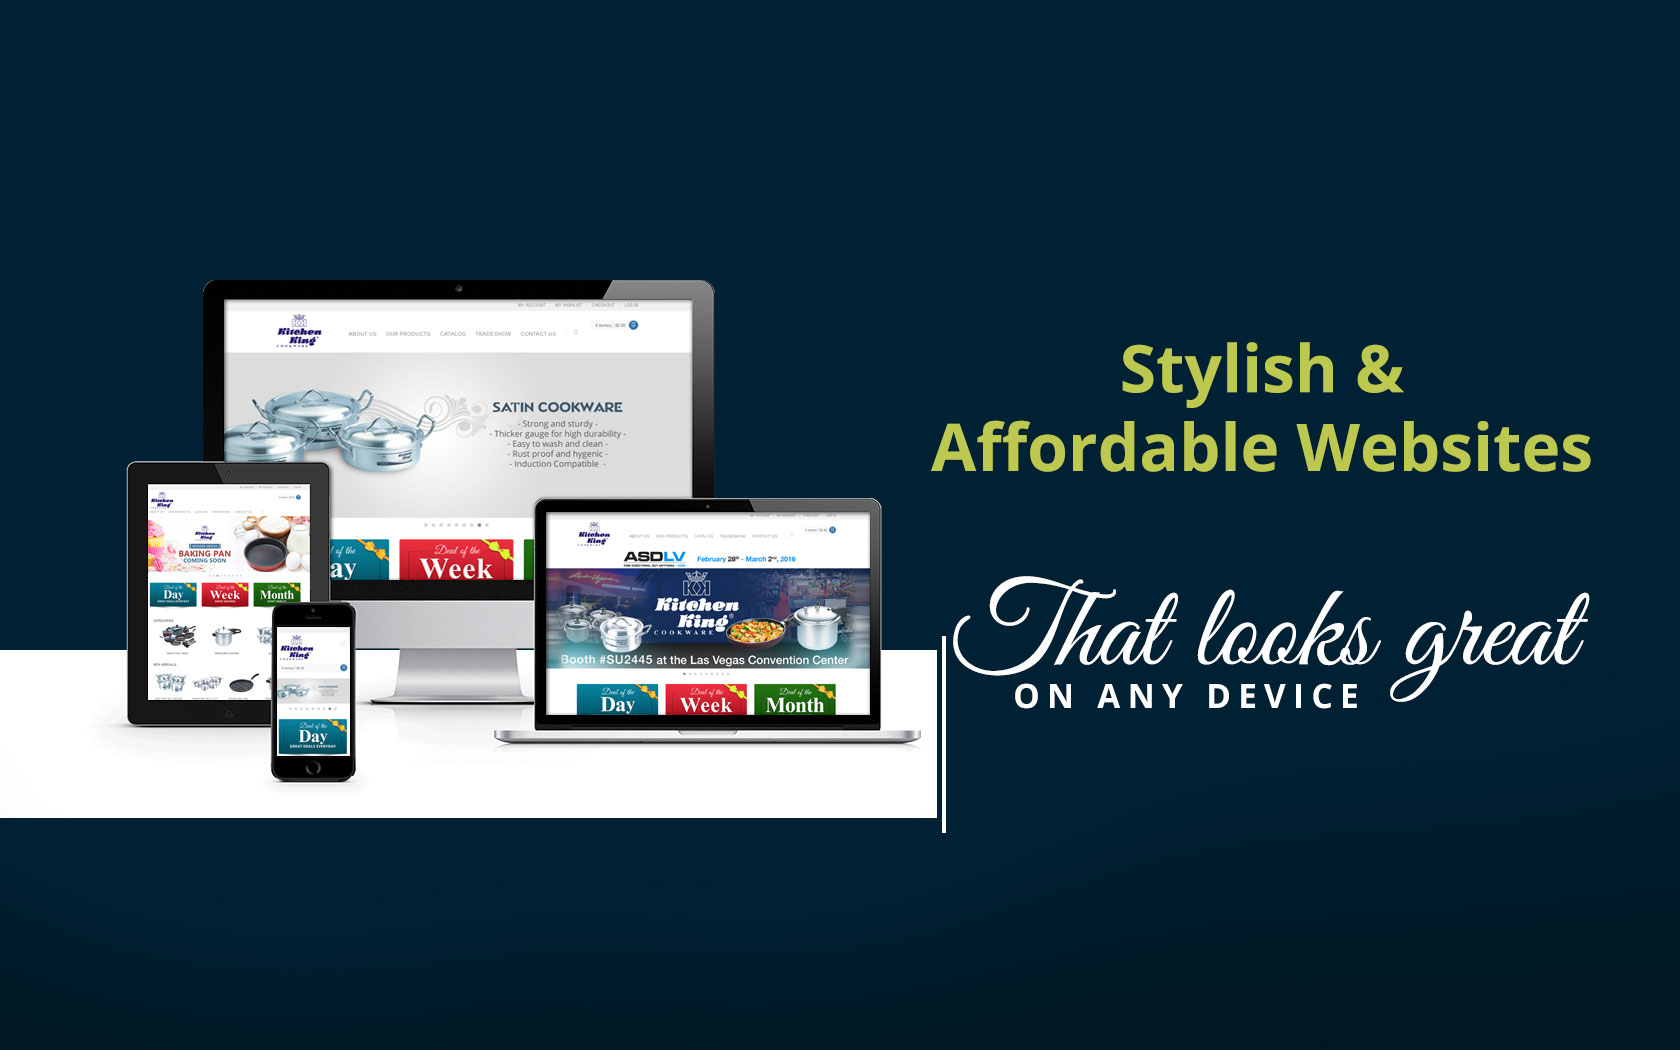 Custom Website & E-Commerce Solutions - MYL